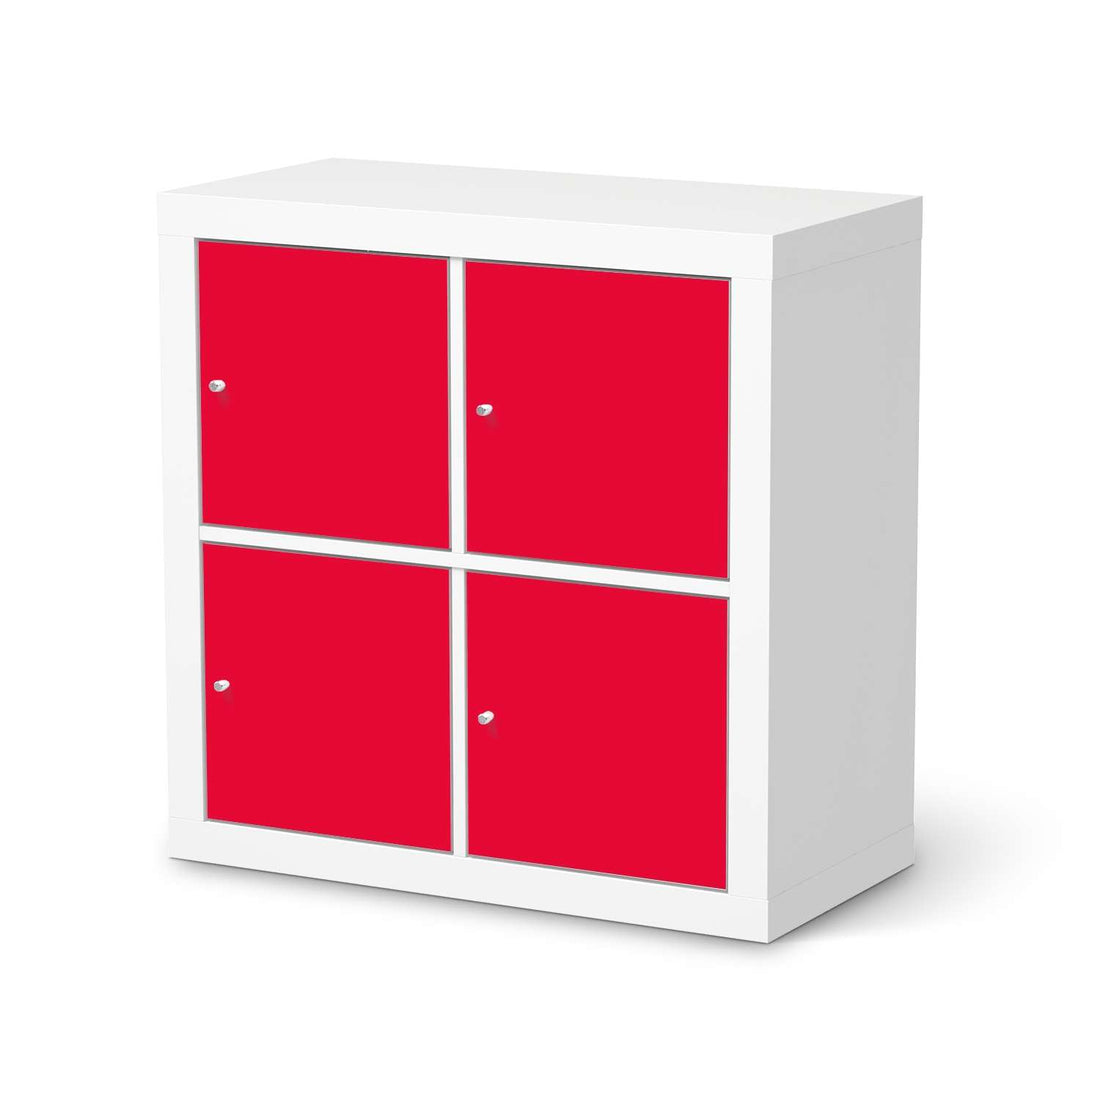 Möbelfolie Rot Light - IKEA Expedit Regal 4 Türen  - weiss